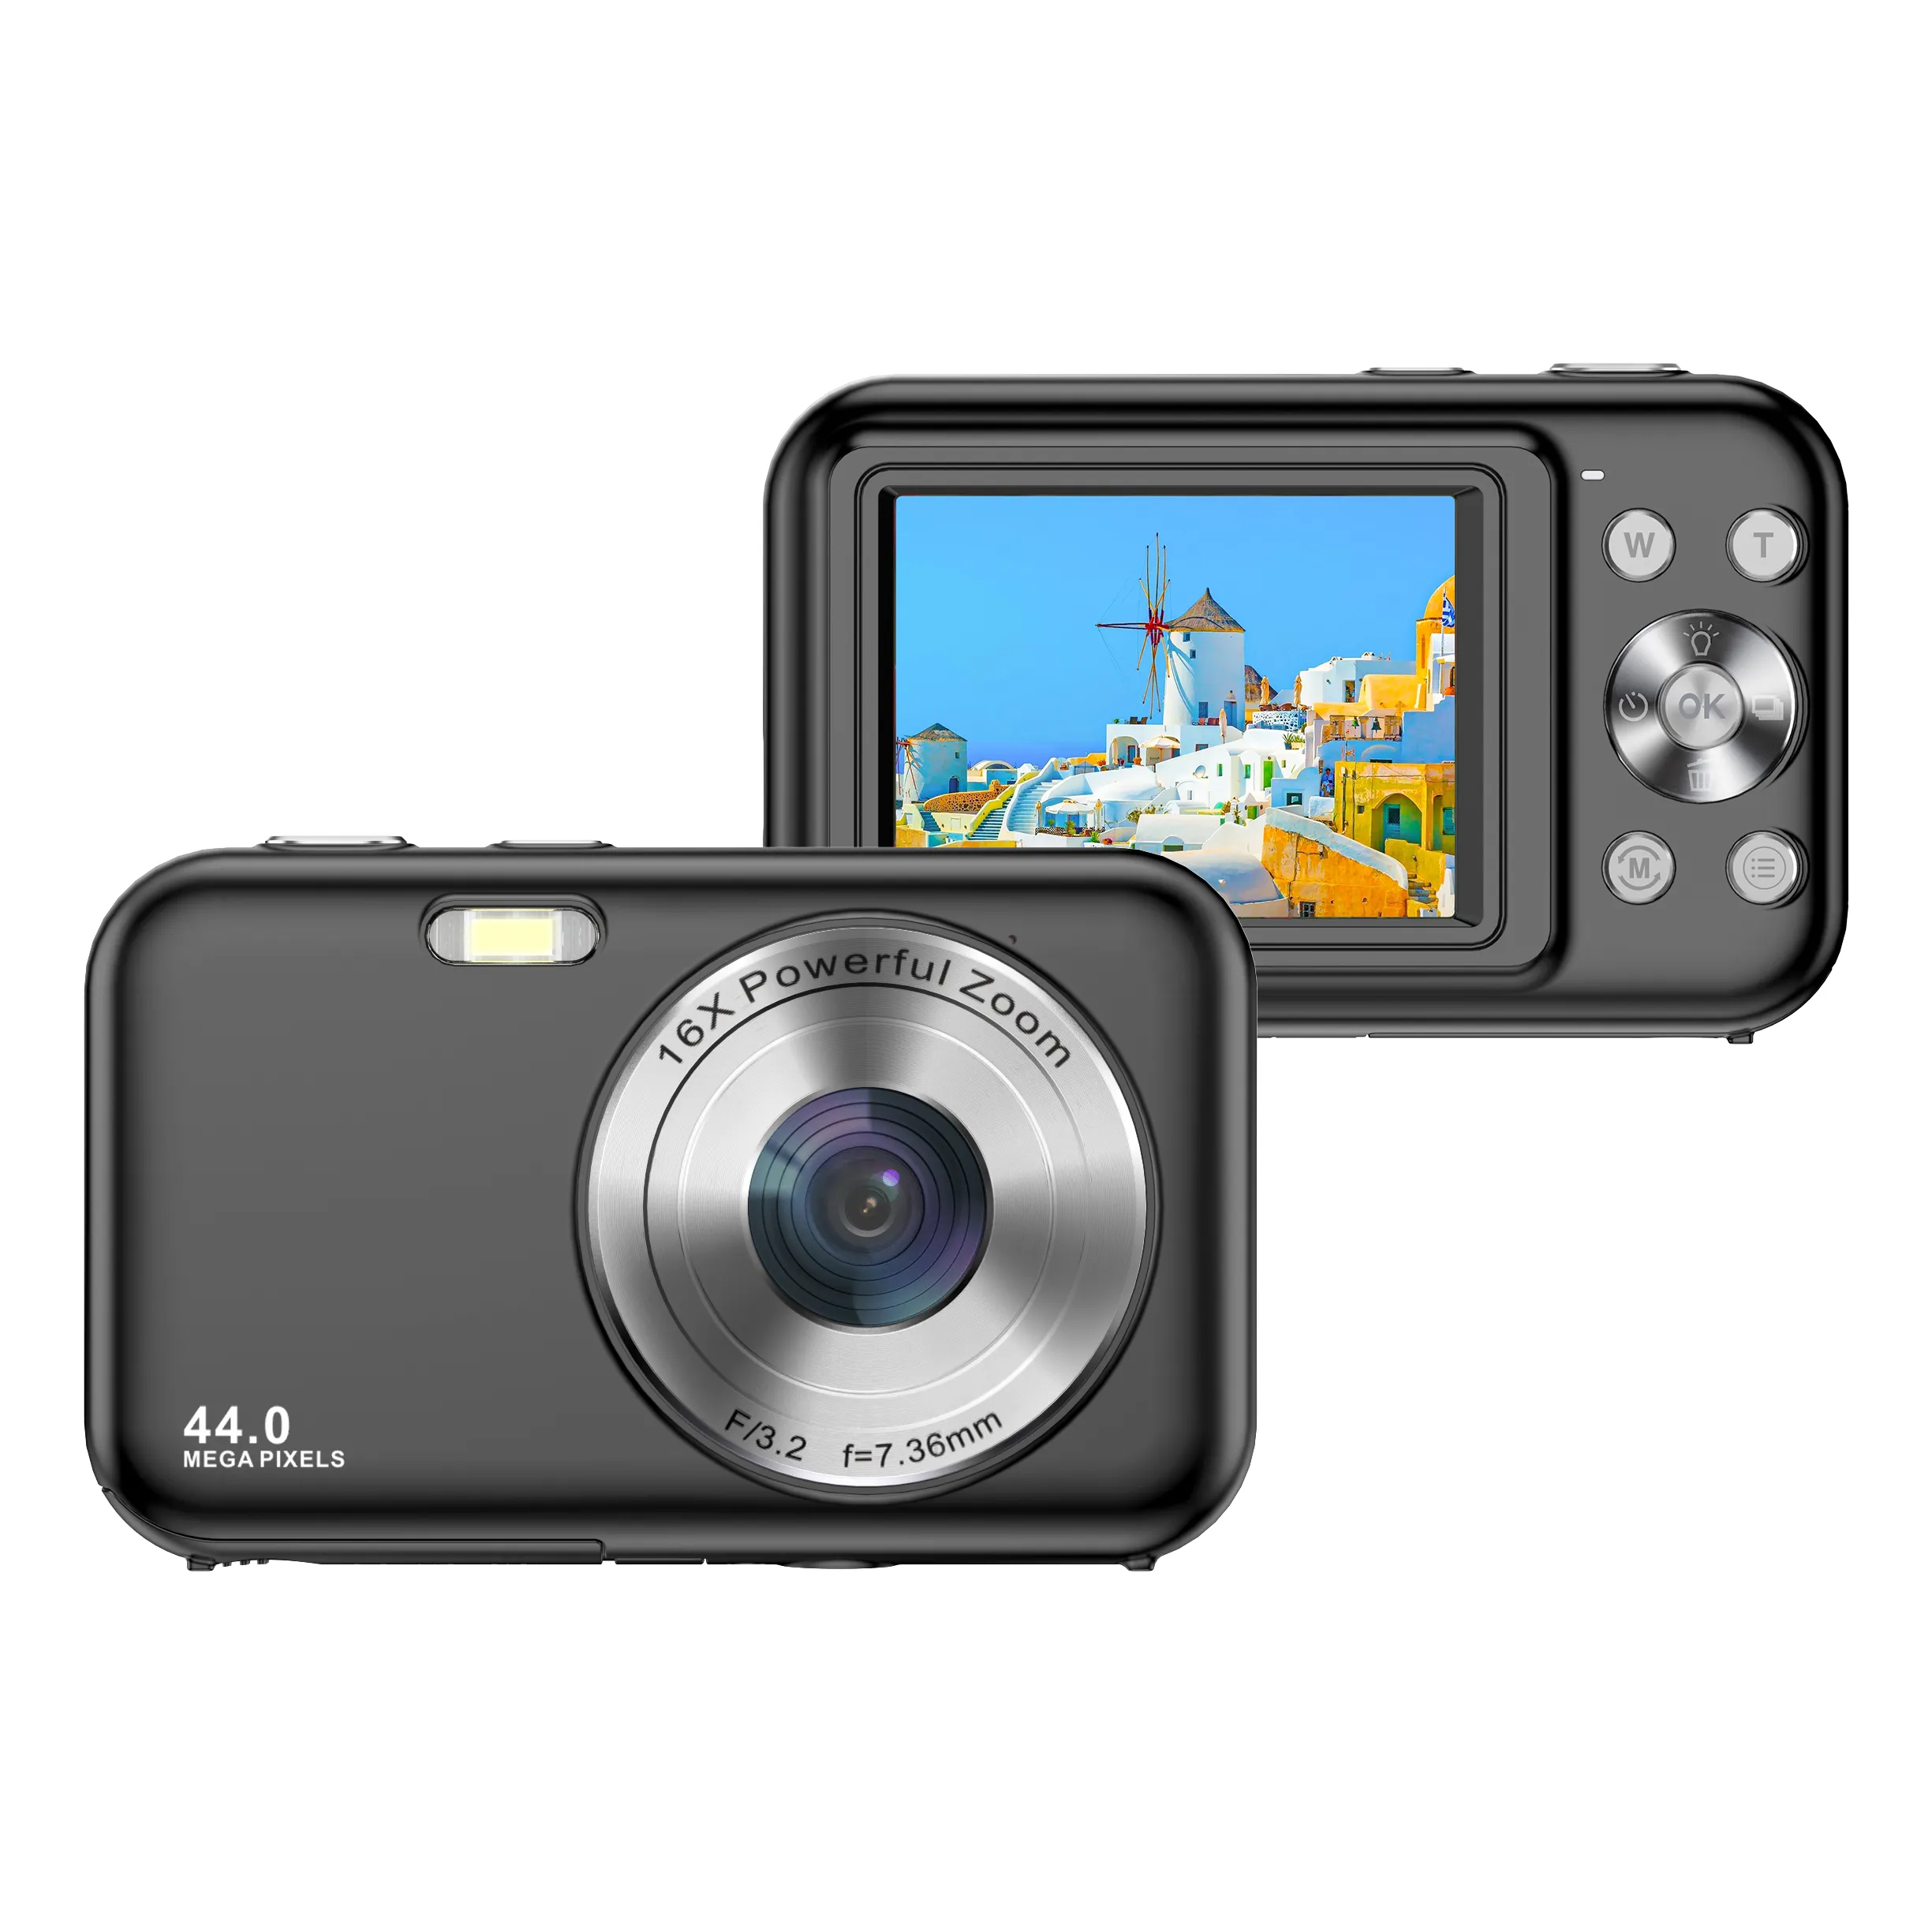 44MP 1080P Caméra OEM photo numérique bon marché Caméra compacte professionnelle de 2.4 pouces avec capture de sourire